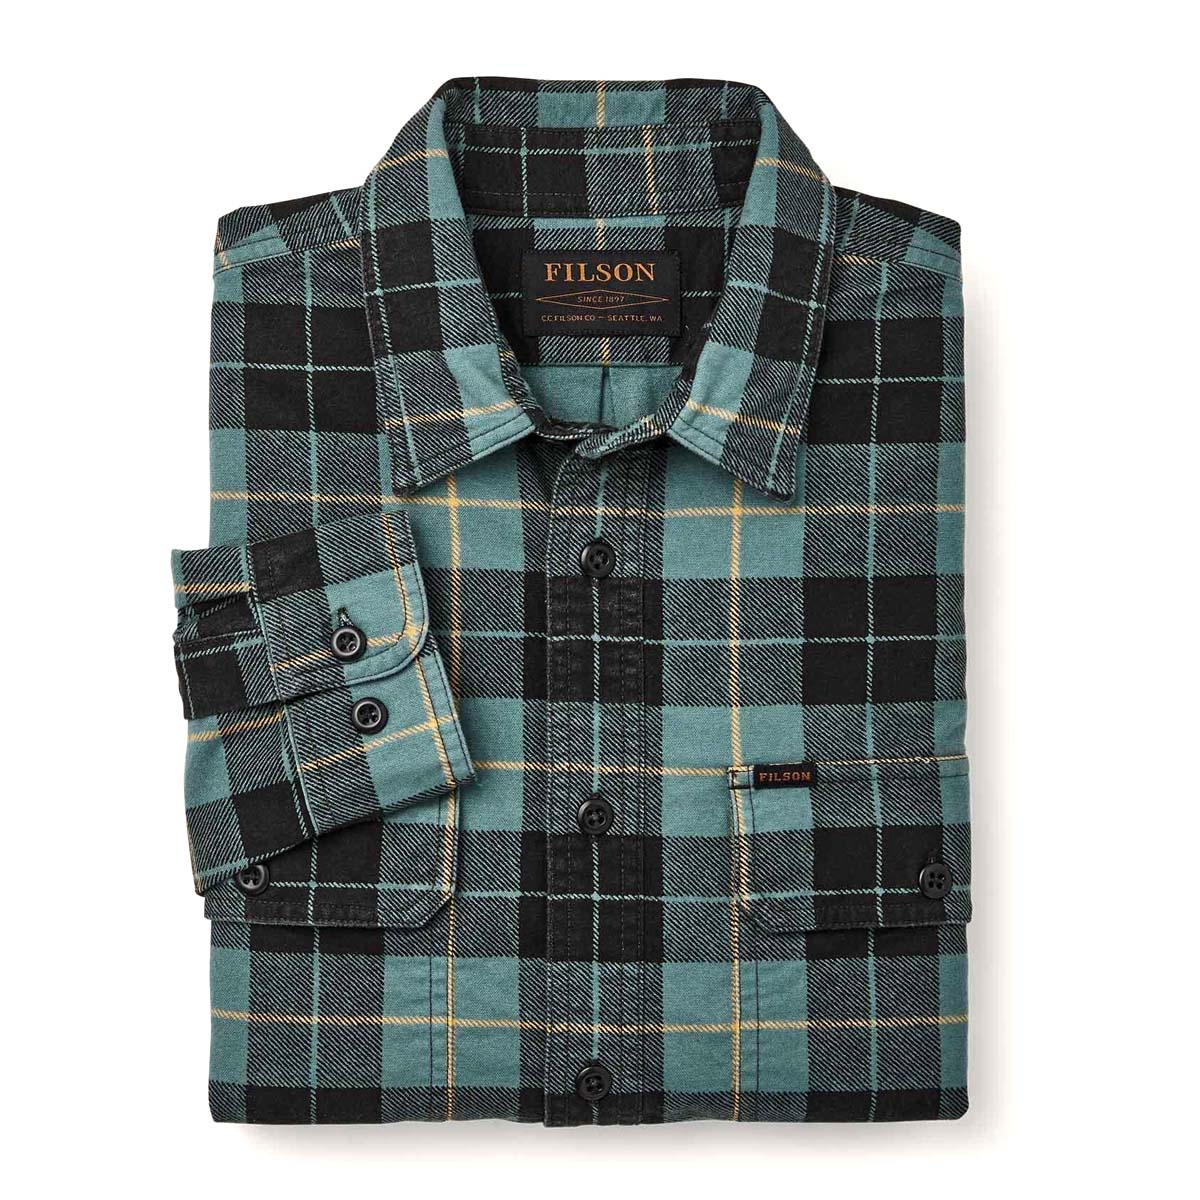 Filson Field Flannel Shirt Northcoast Green Print, Comfortabel en even zacht als sterk